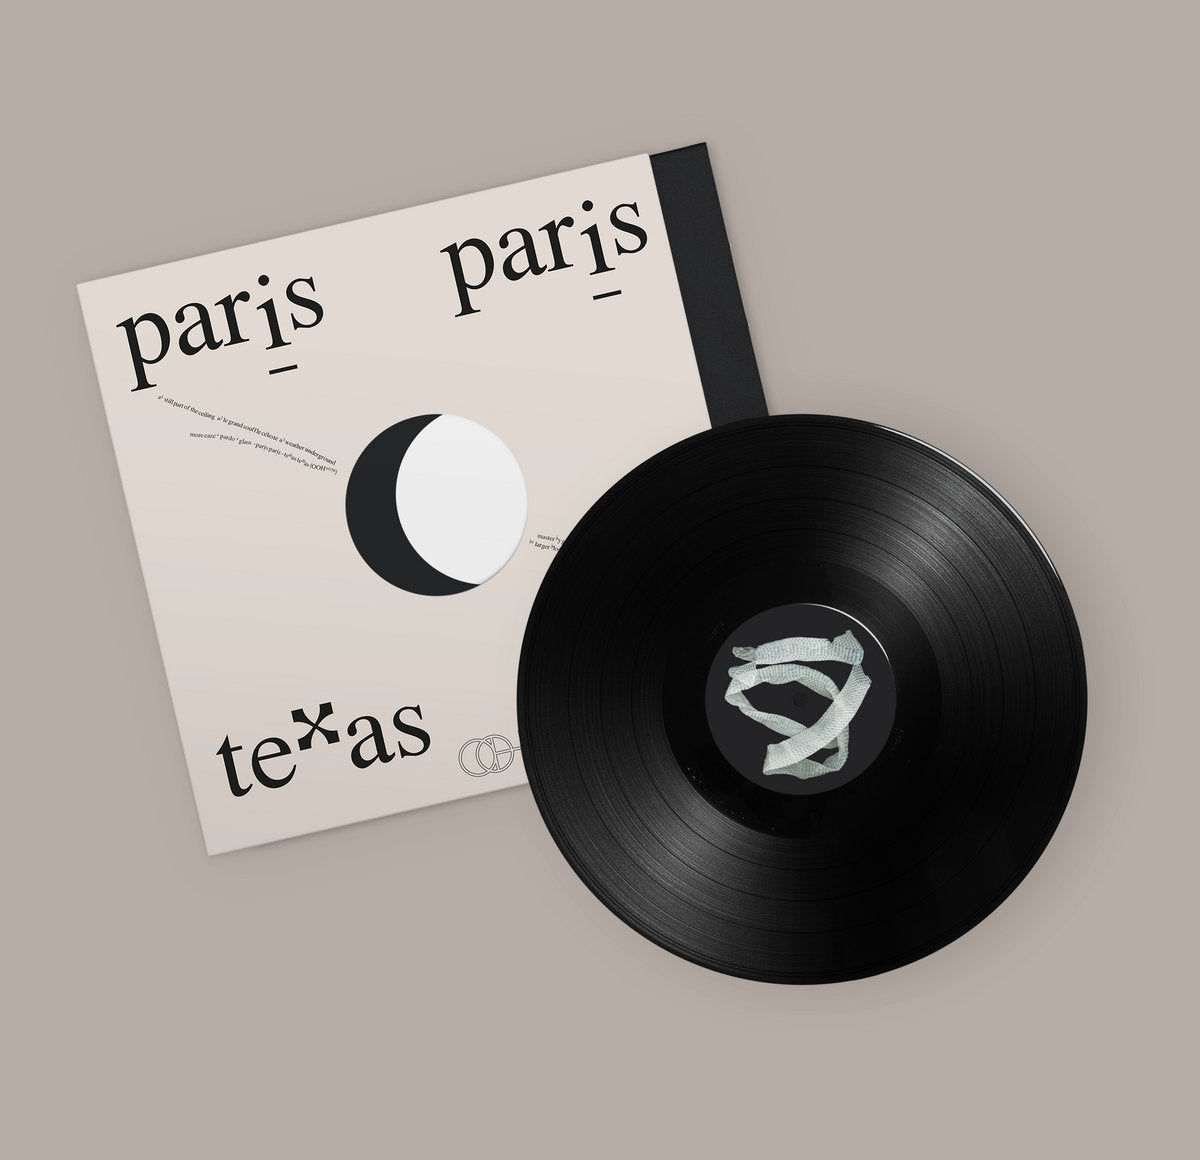 【LP】 More Eaze, Pardo & Glass - Paris Paris, Texas Texas